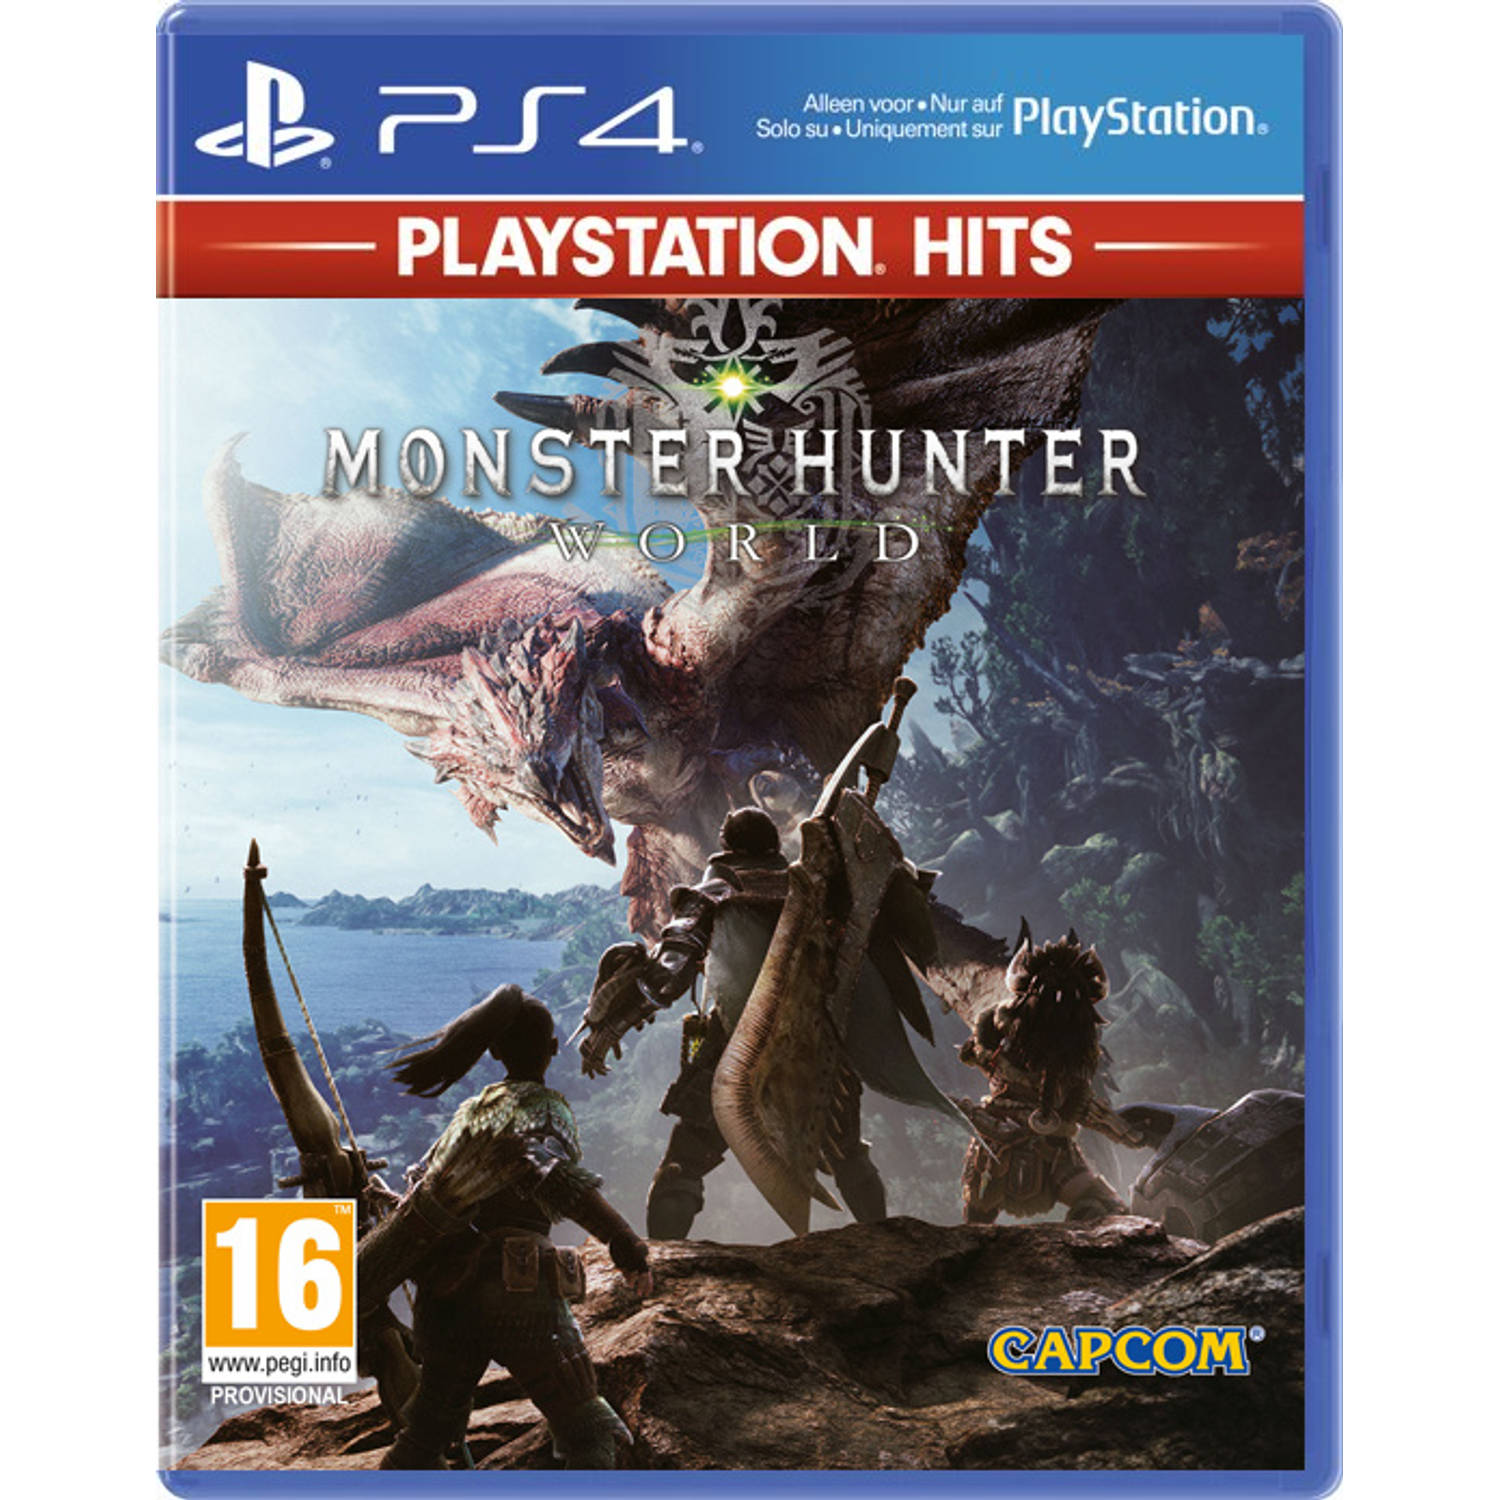 Monster Hunter World (Playstation Hits) PS4